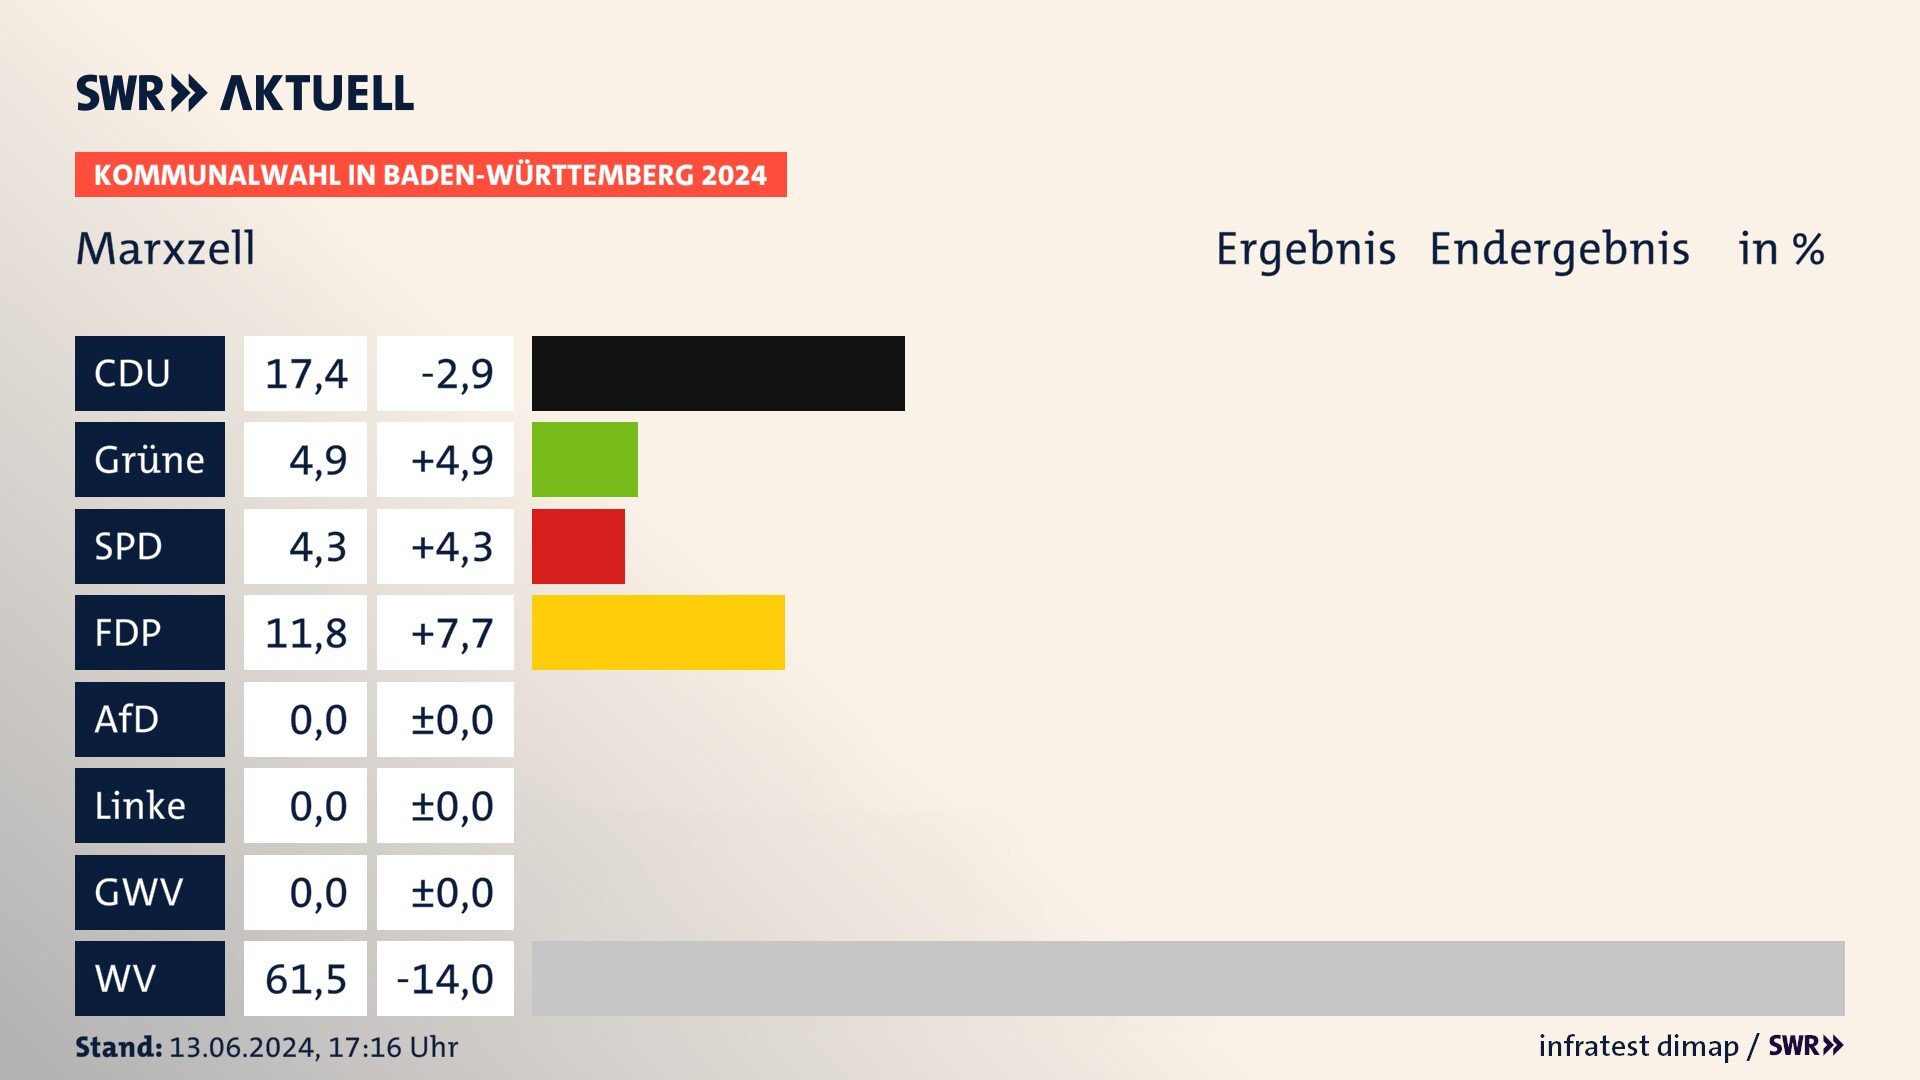 Kommunalwahl 2024 Endergebnis Zweitstimme für Marxzell. In Marxzell erzielt die CDU 17,4 Prozent der gültigen  Stimmen. Die Grünen landen bei 4,9 Prozent. Die SPD erreicht 4,3 Prozent. Die FDP kommt auf 11,8 Prozent. Die Wählervereinigungen landen bei 61,5 Prozent.